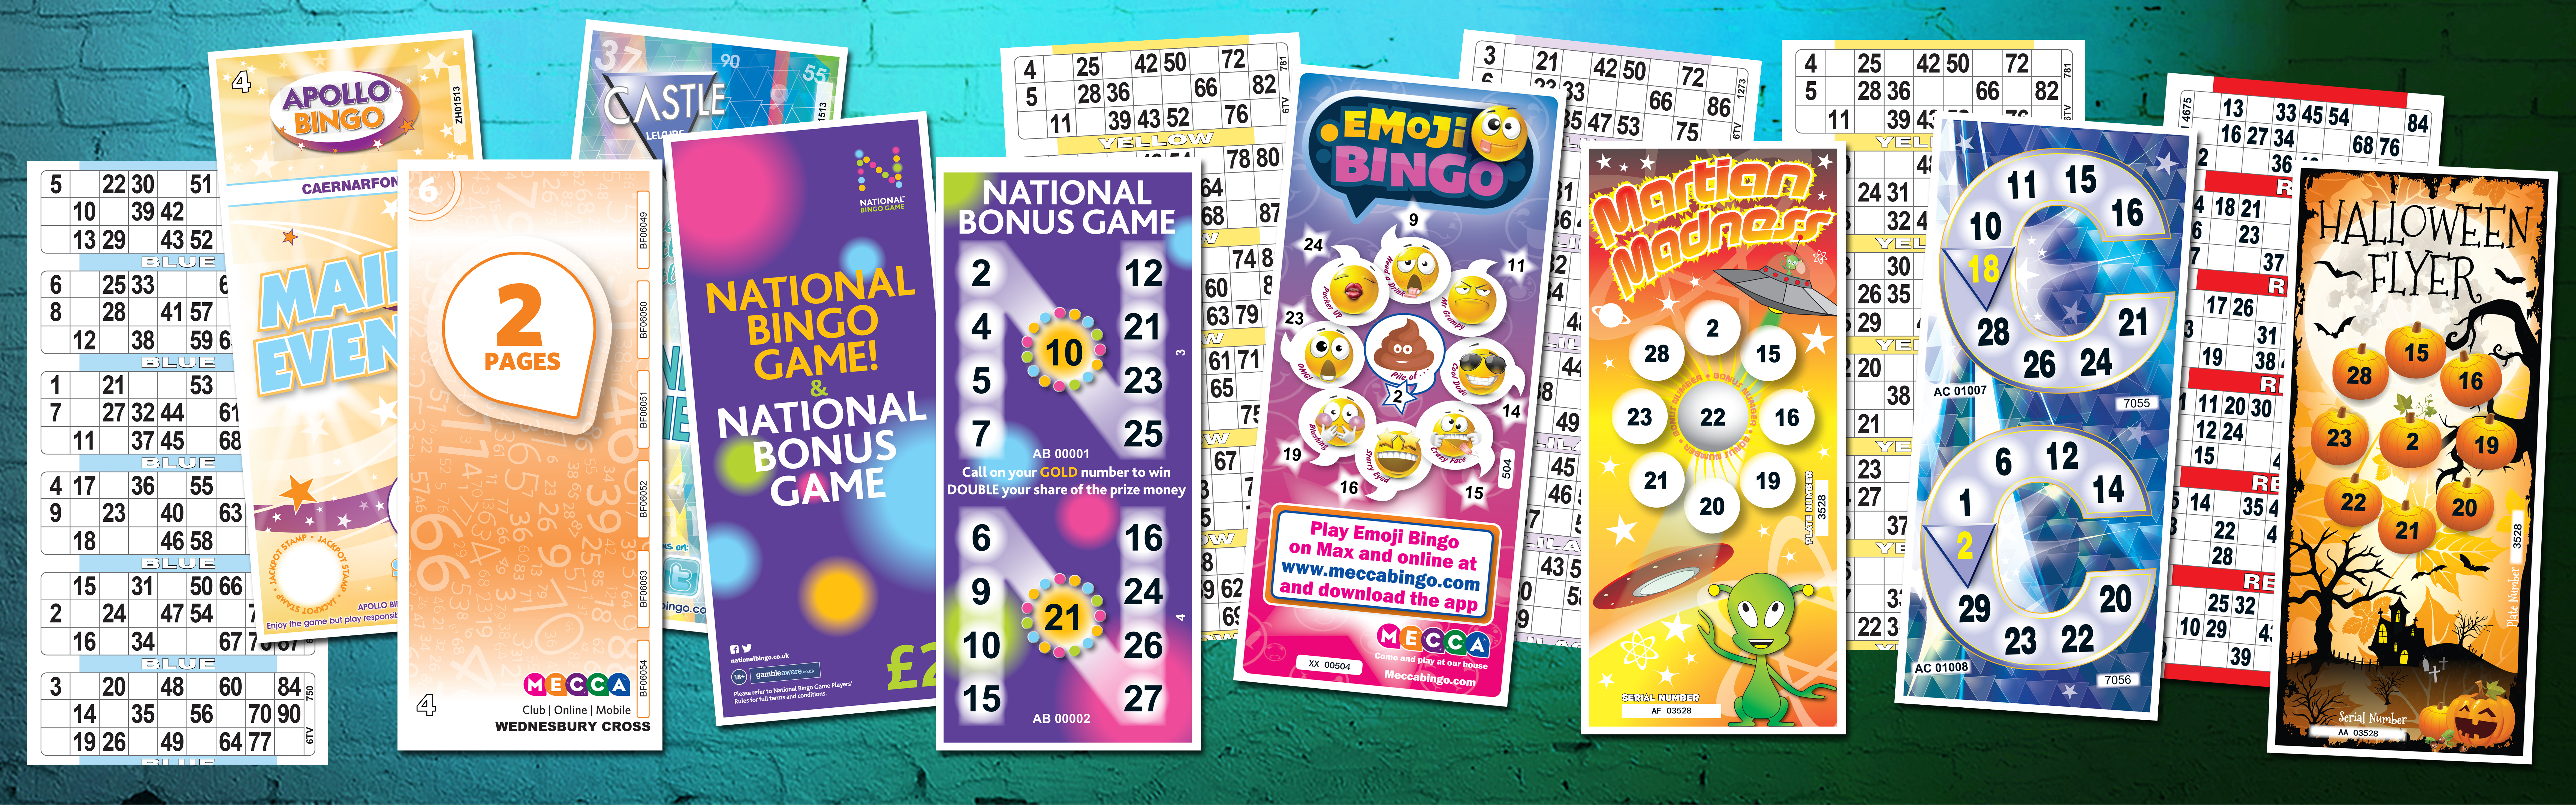 Bingo Ticket head banner4FLAT